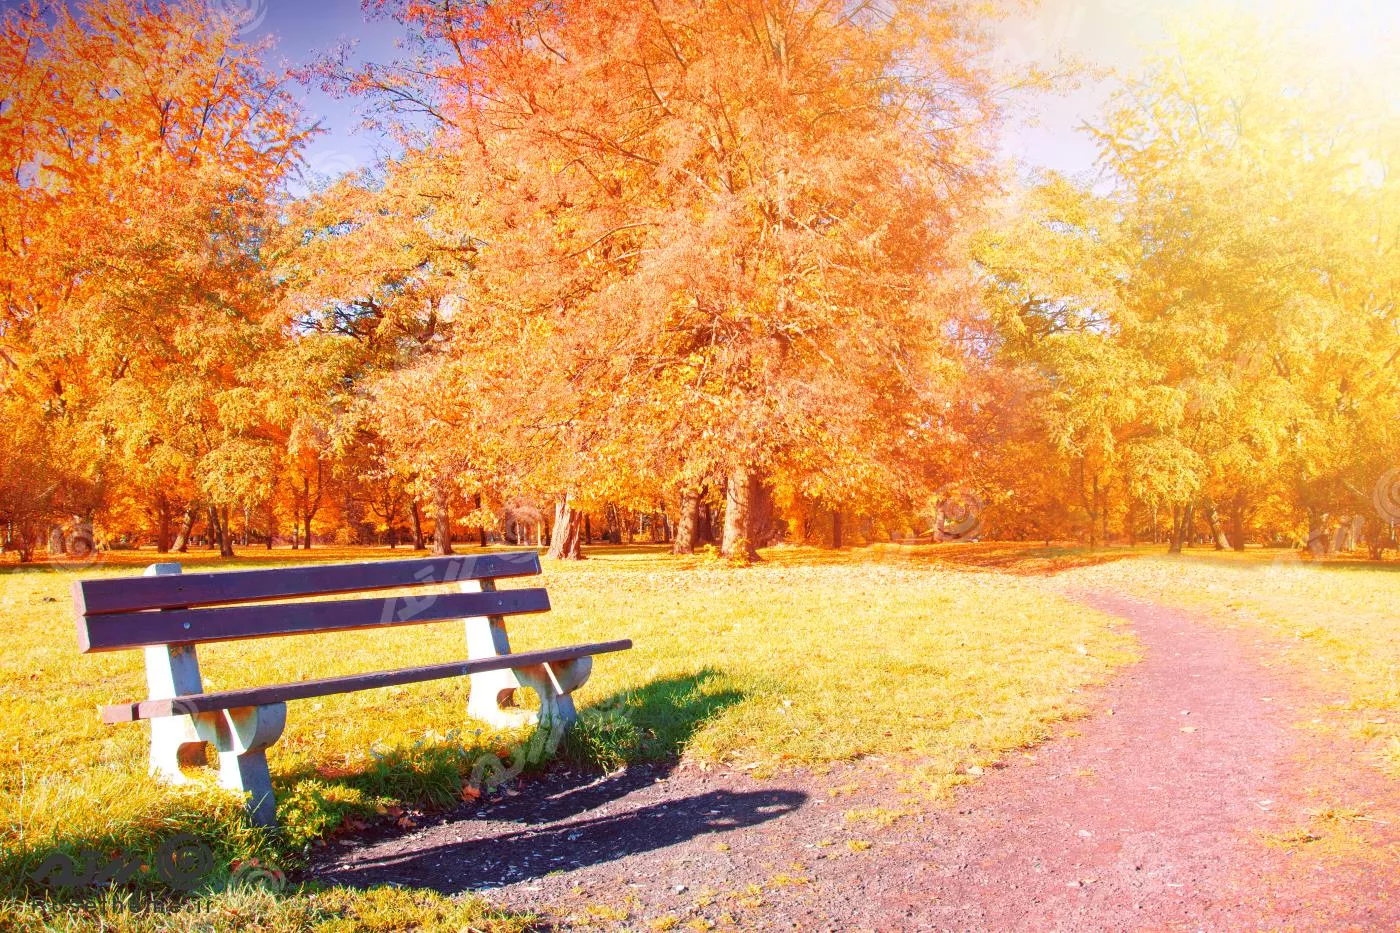 عکس با کیفیت از نمای نیمکت در پارک در فصل پاییز به همراه نمای درخت های پاییزی با برگ های نارنجی 22034